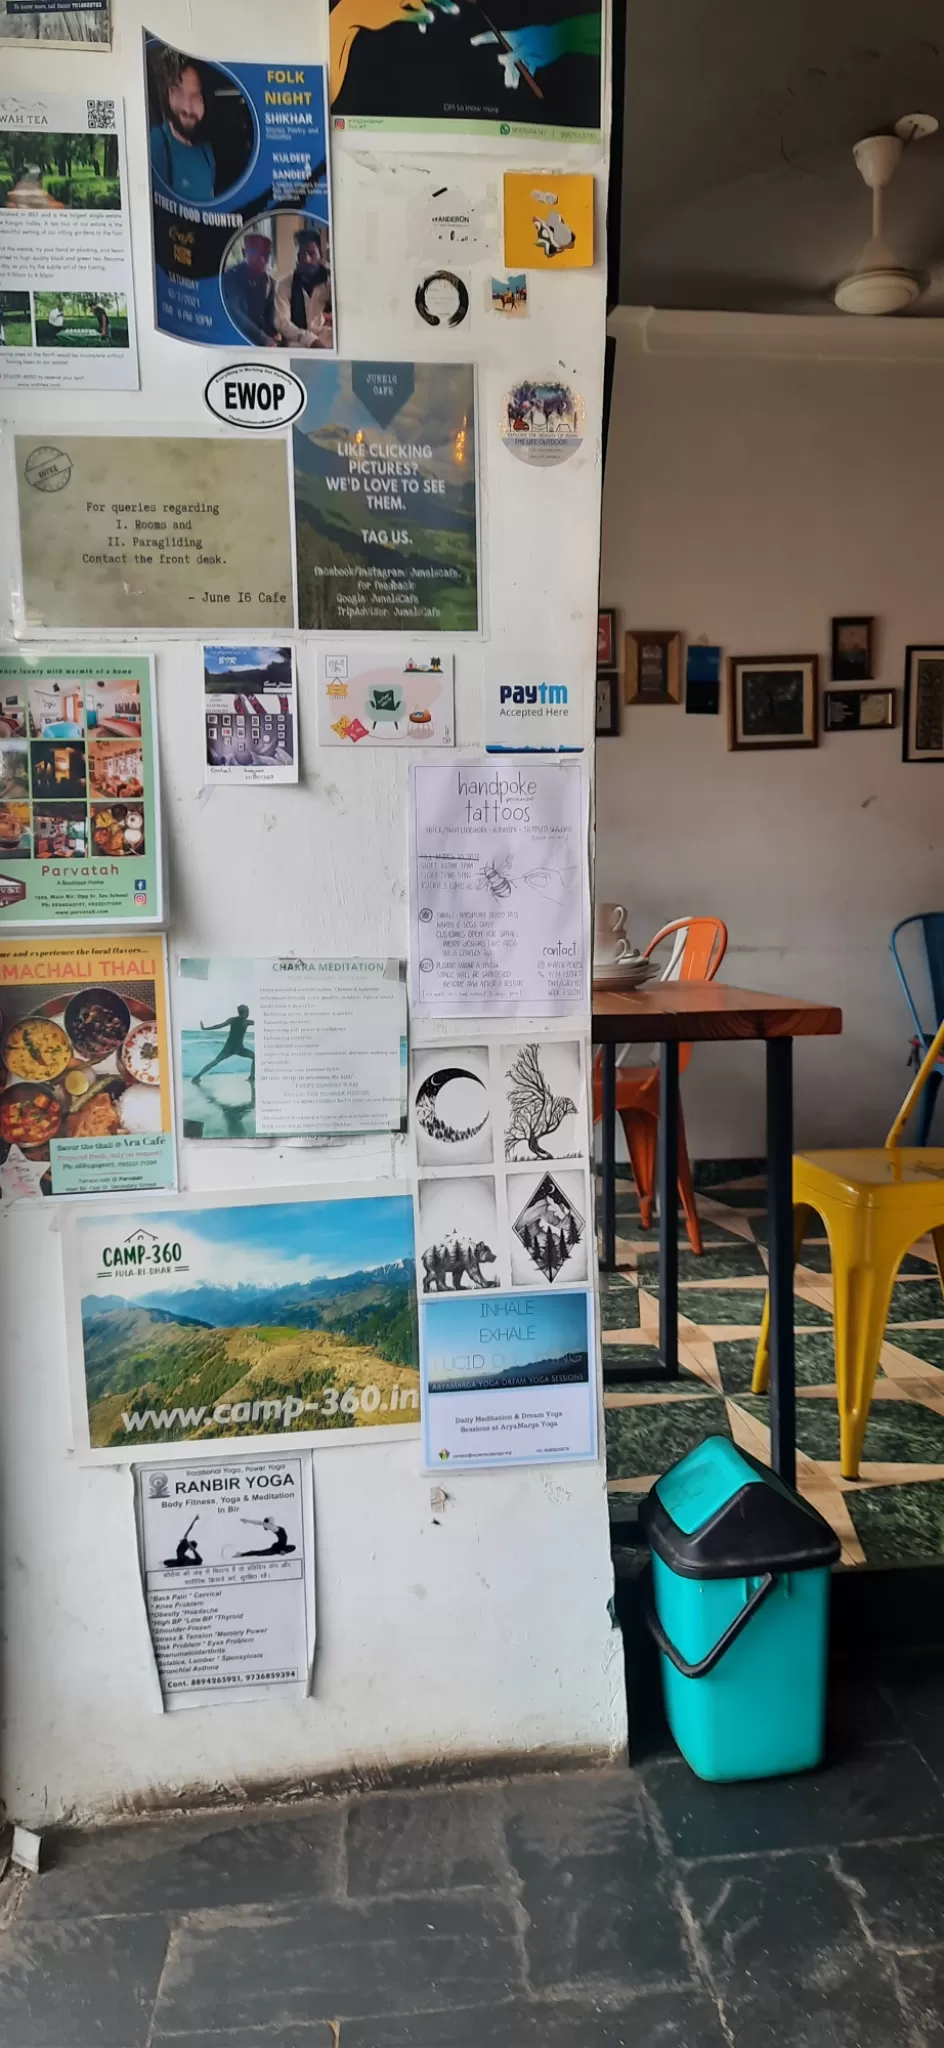 Photo of June 16 cafe By tarang gupta